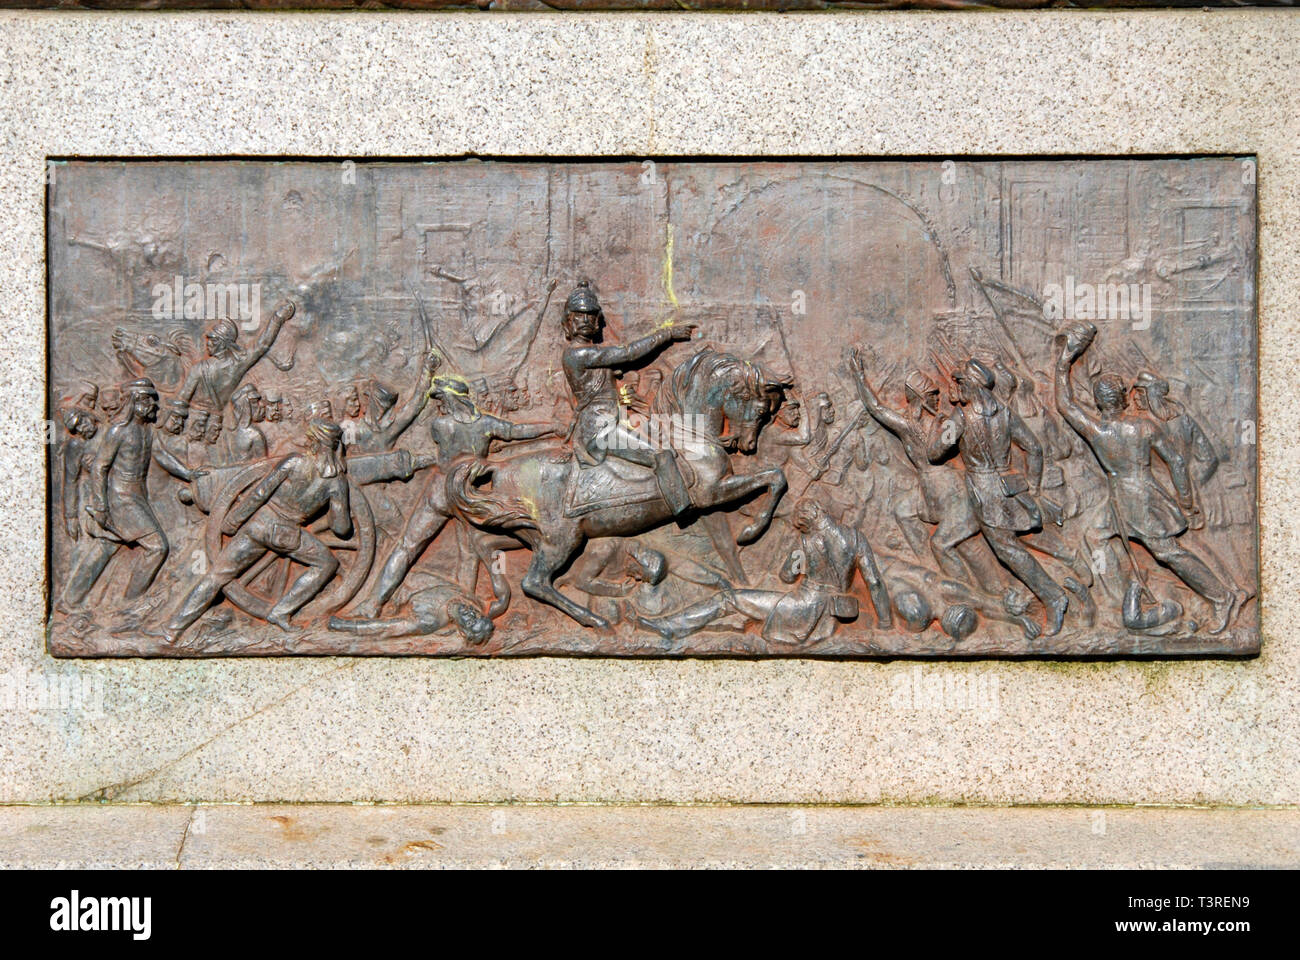 Sculture raffiguranti scene di guerra sulla base del memoriale di James George Smith Neil, Ayr, Scozia Foto Stock